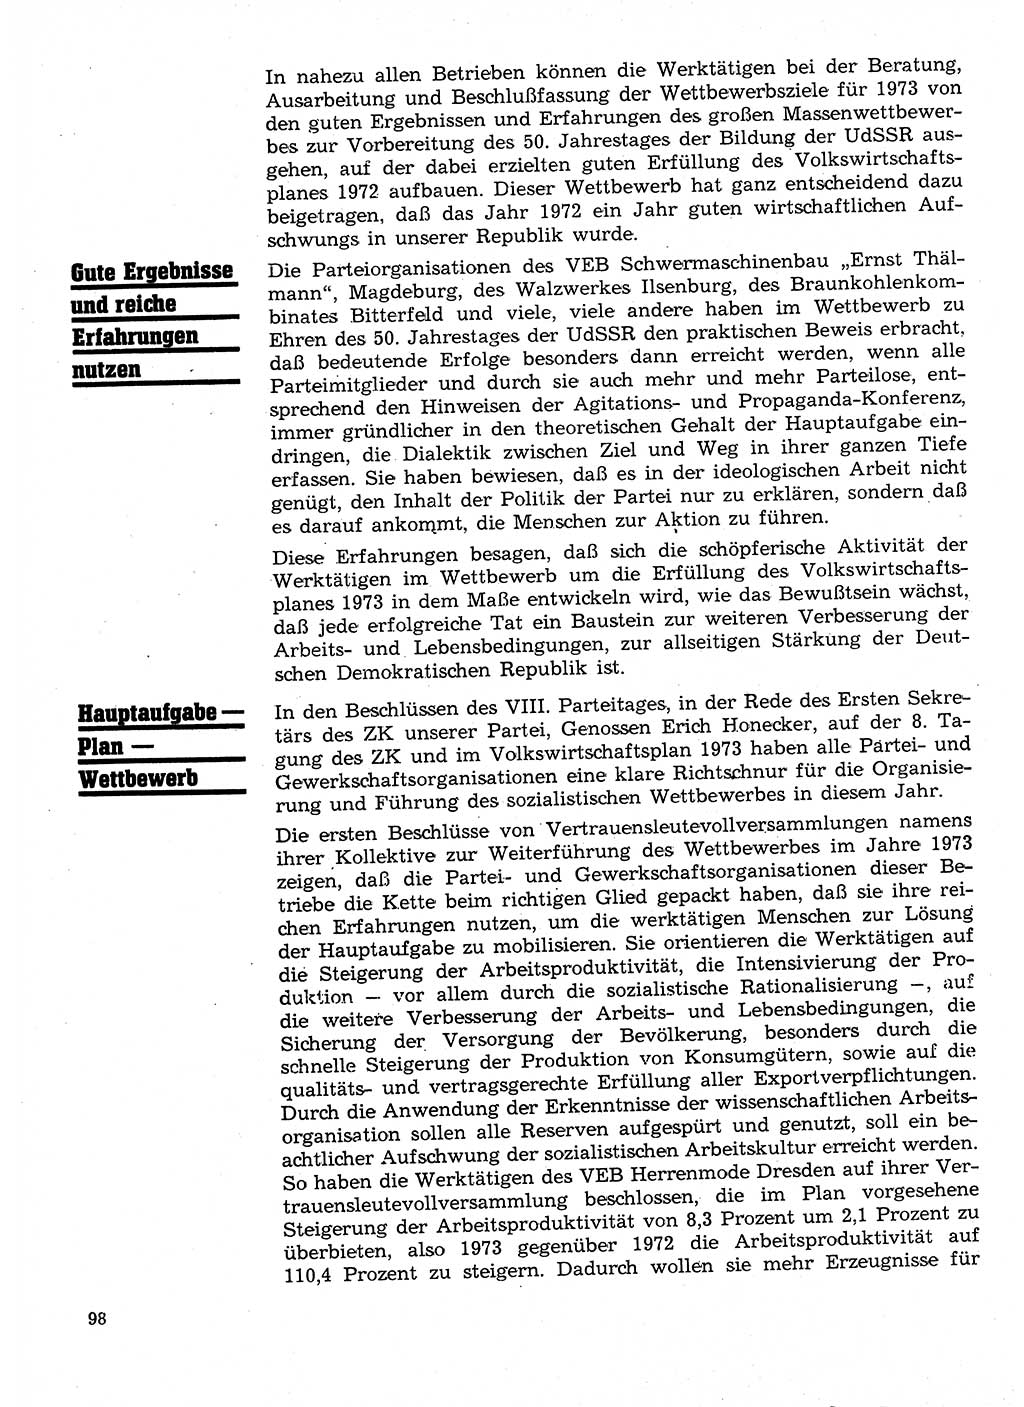 Neuer Weg (NW), Organ des Zentralkomitees (ZK) der SED (Sozialistische Einheitspartei Deutschlands) für Fragen des Parteilebens, 28. Jahrgang [Deutsche Demokratische Republik (DDR)] 1973, Seite 98 (NW ZK SED DDR 1973, S. 98)